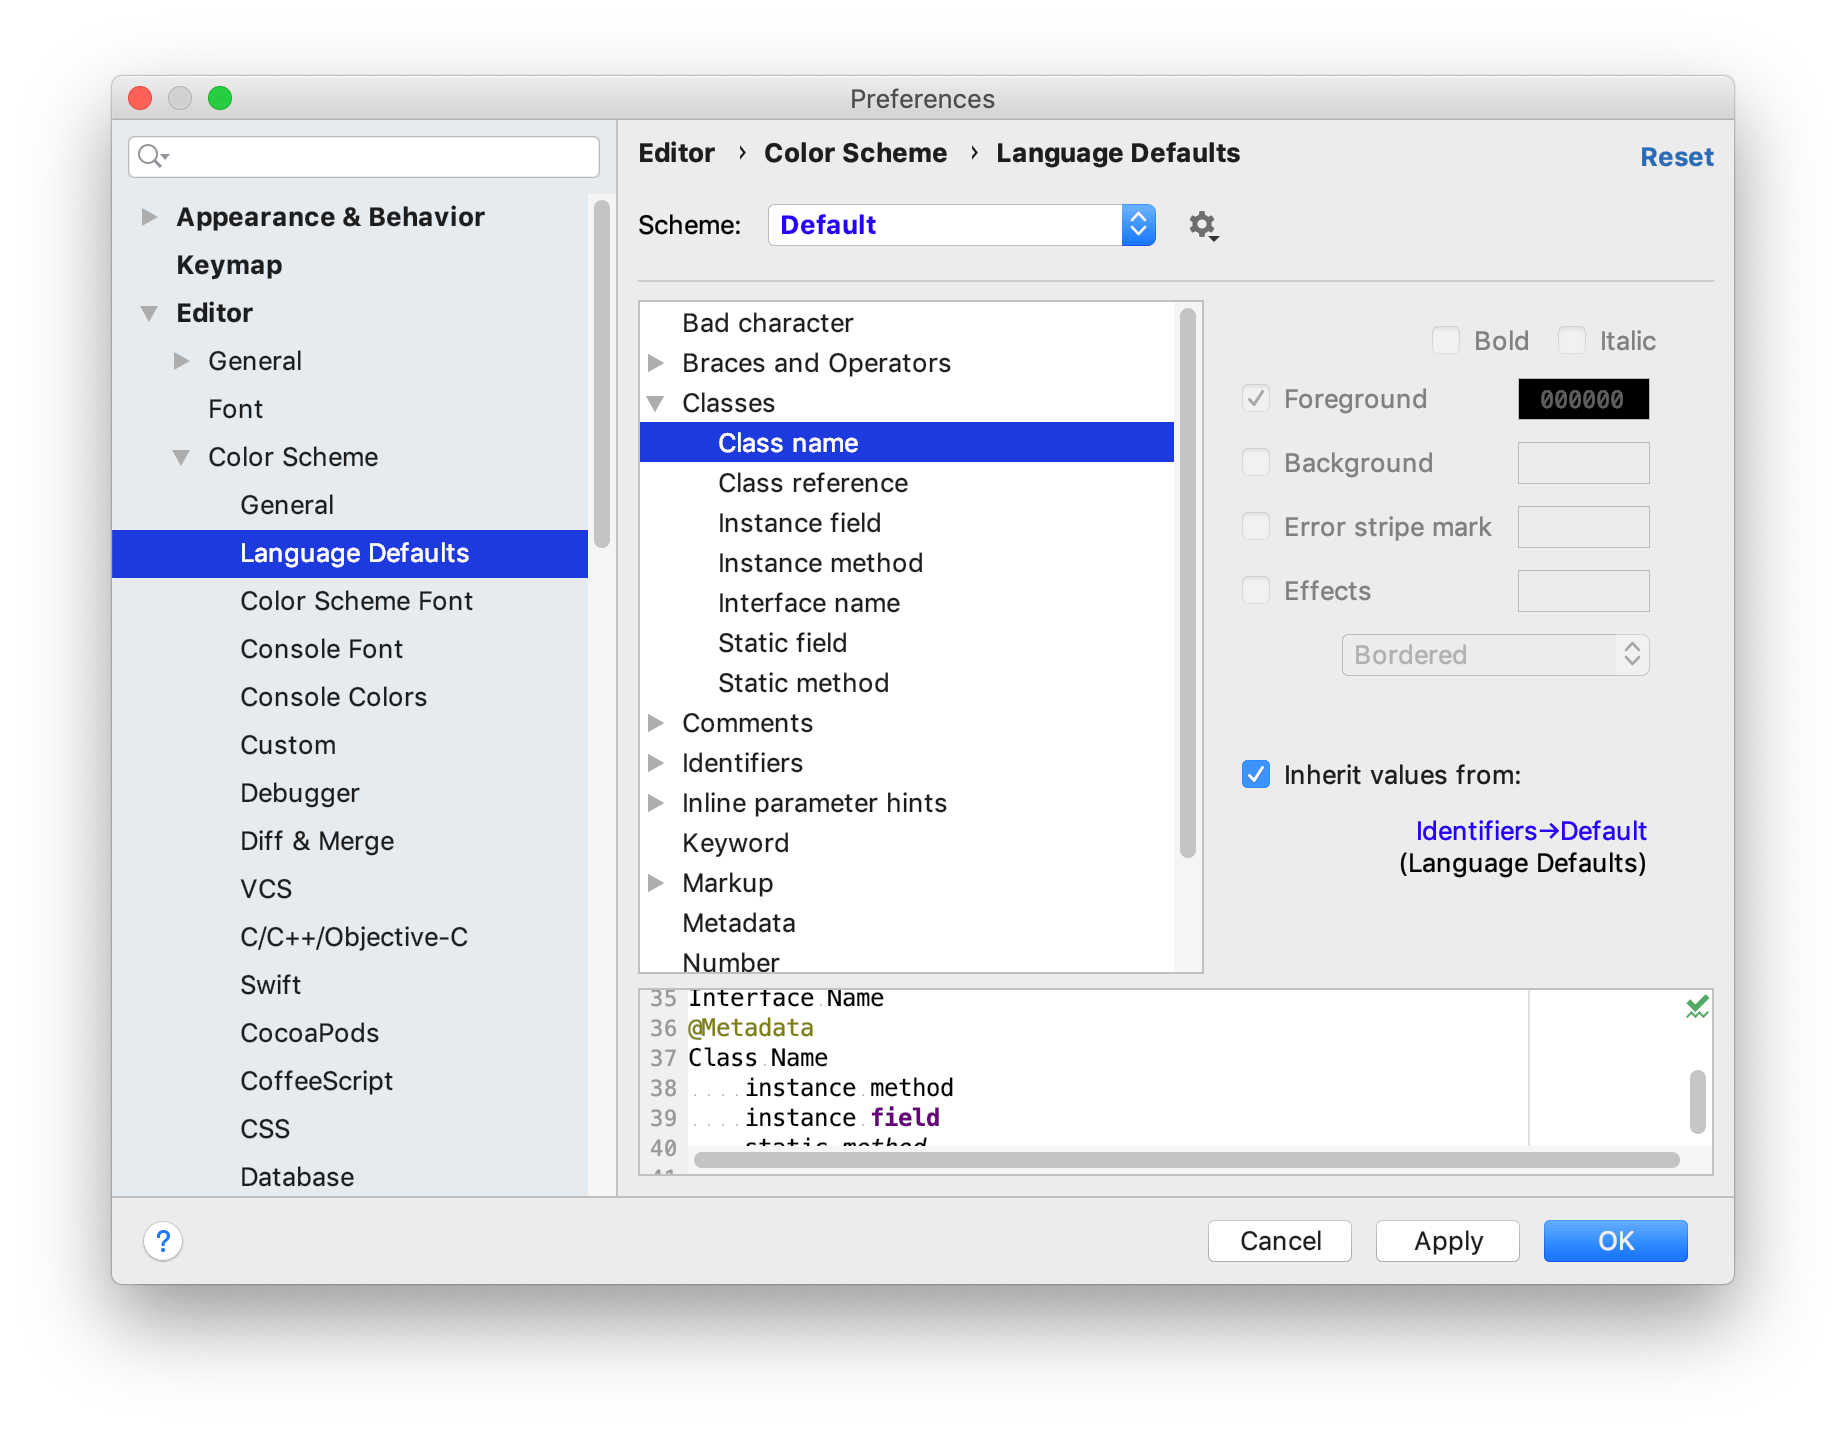 Language Defaults section under Color Scheme settings